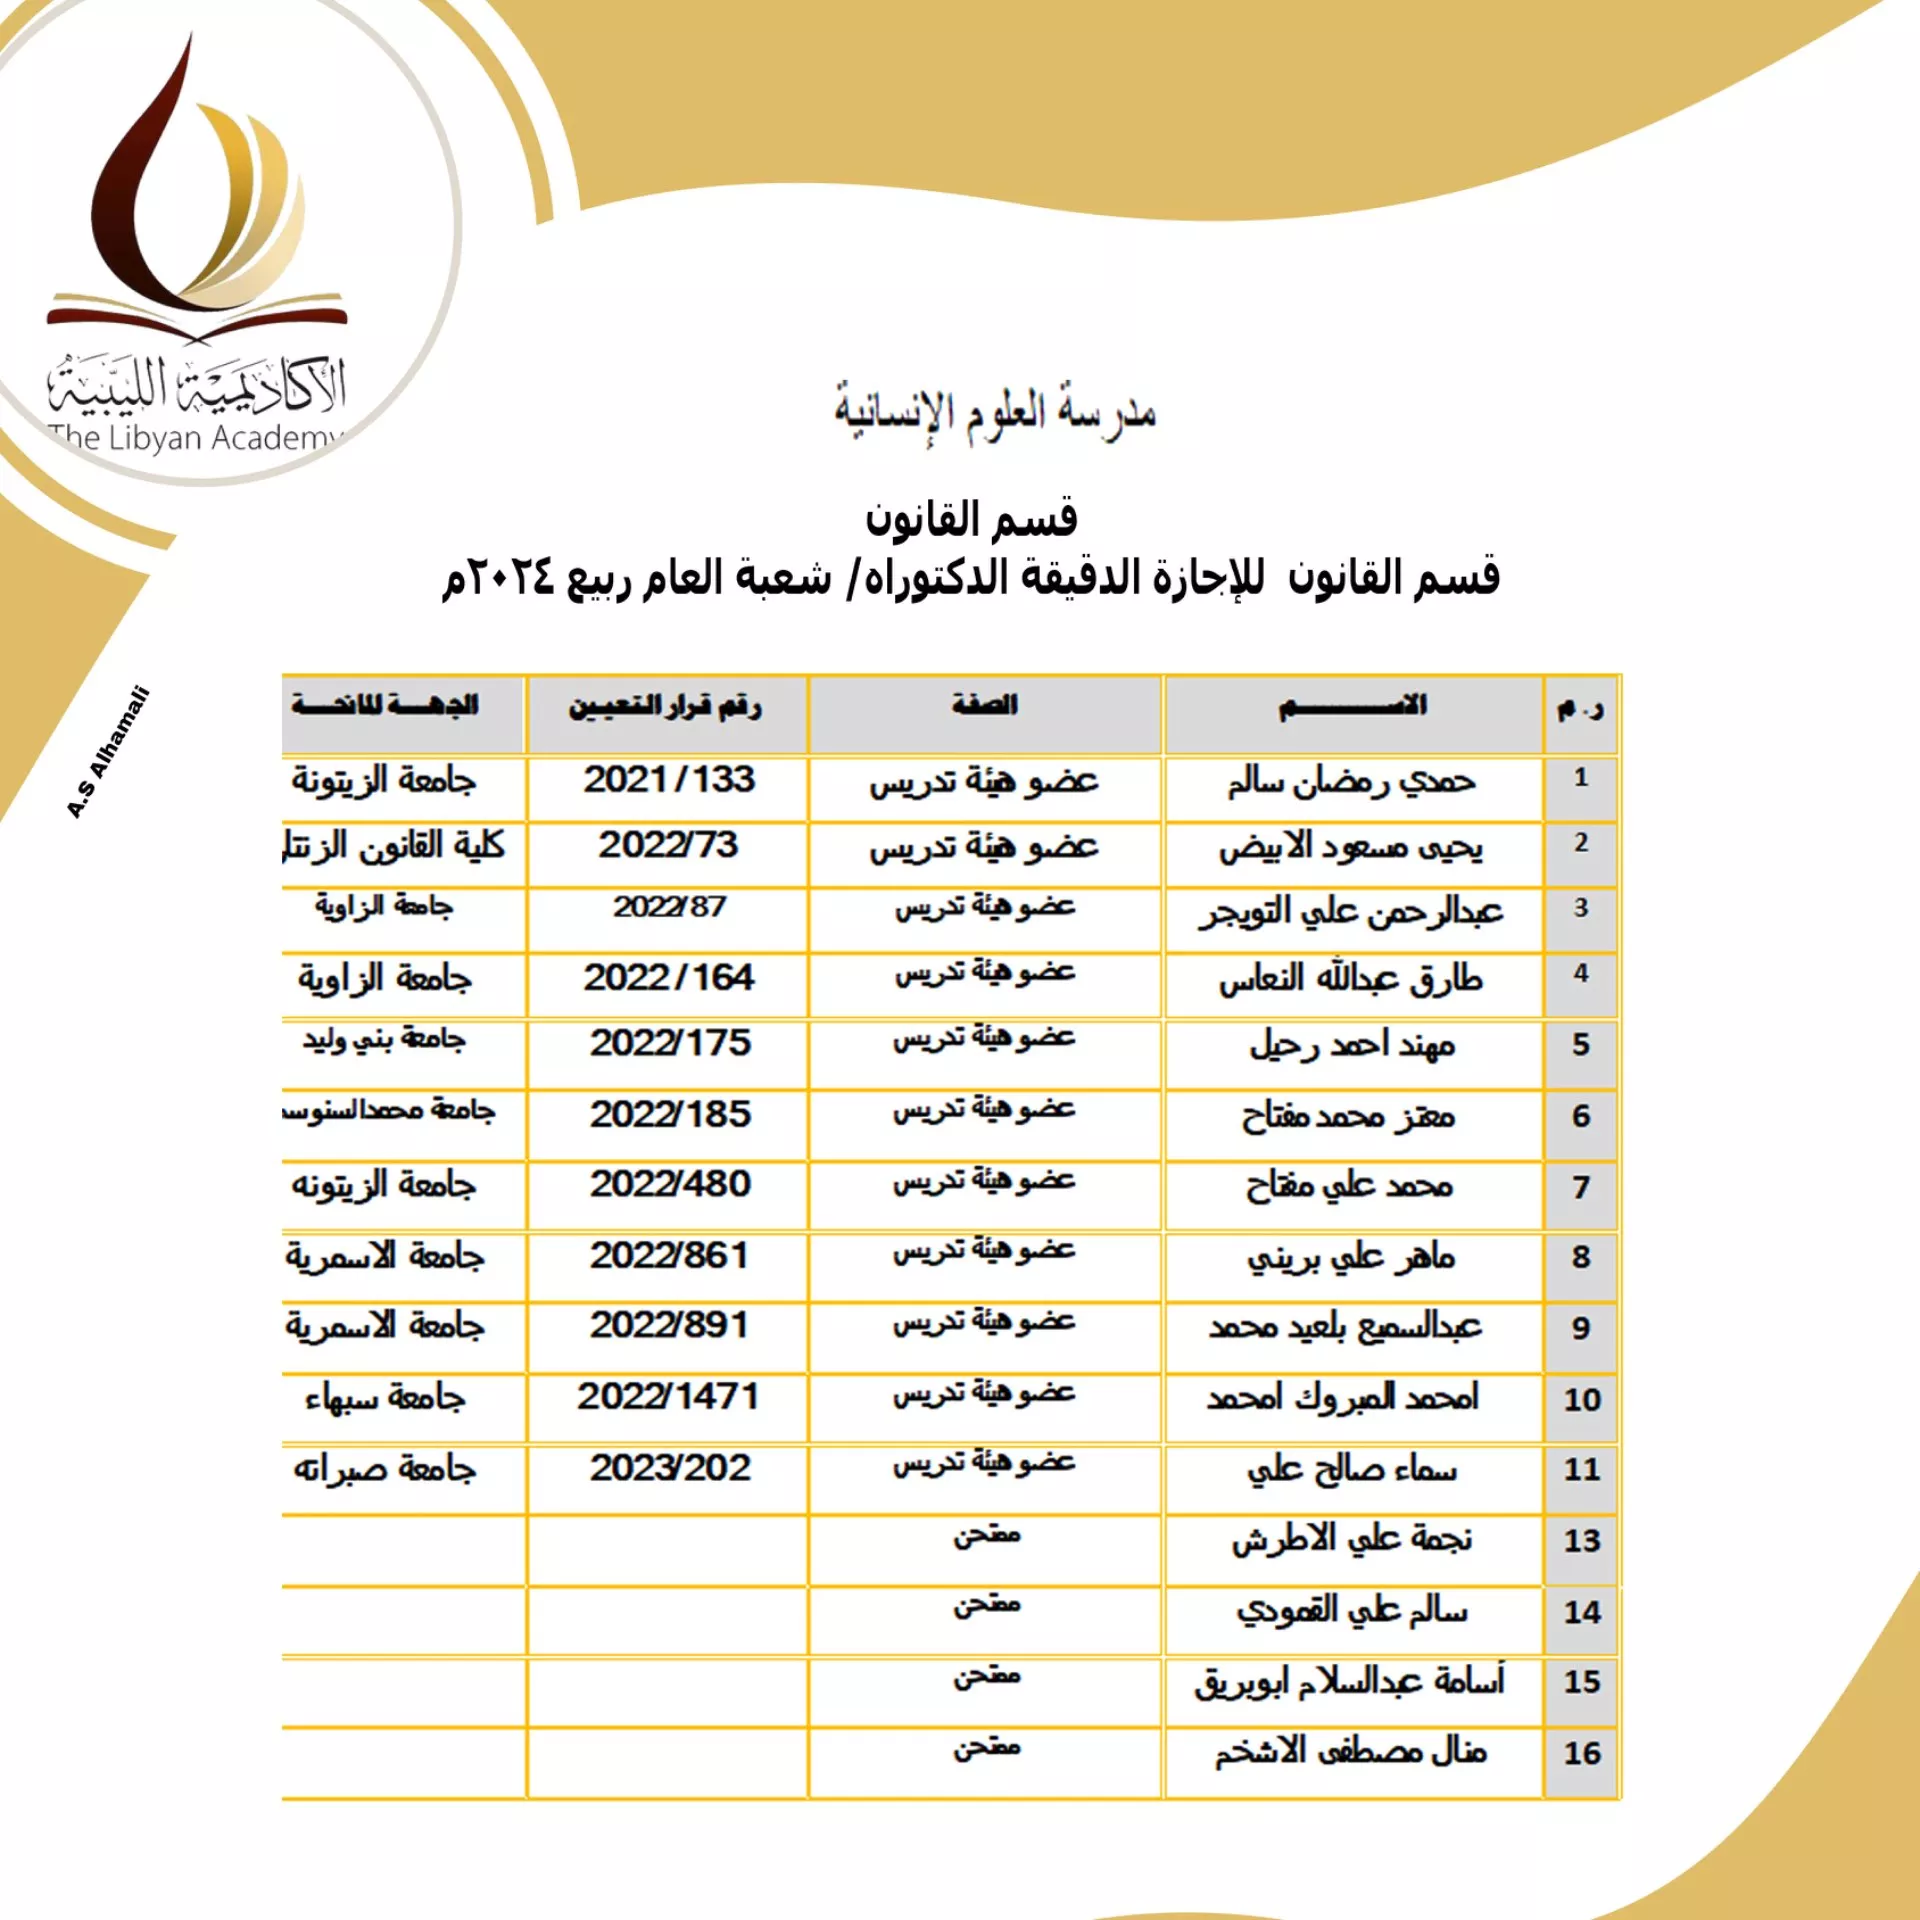 نتائج امتحانات المفاضلة للمتقدمين لدراسة الدكتوراه بالأكاديمية الليبية للدراسات العليا لمدرسة العلوم الانسانية للفصل الدراسي خريف 2023/ 2024